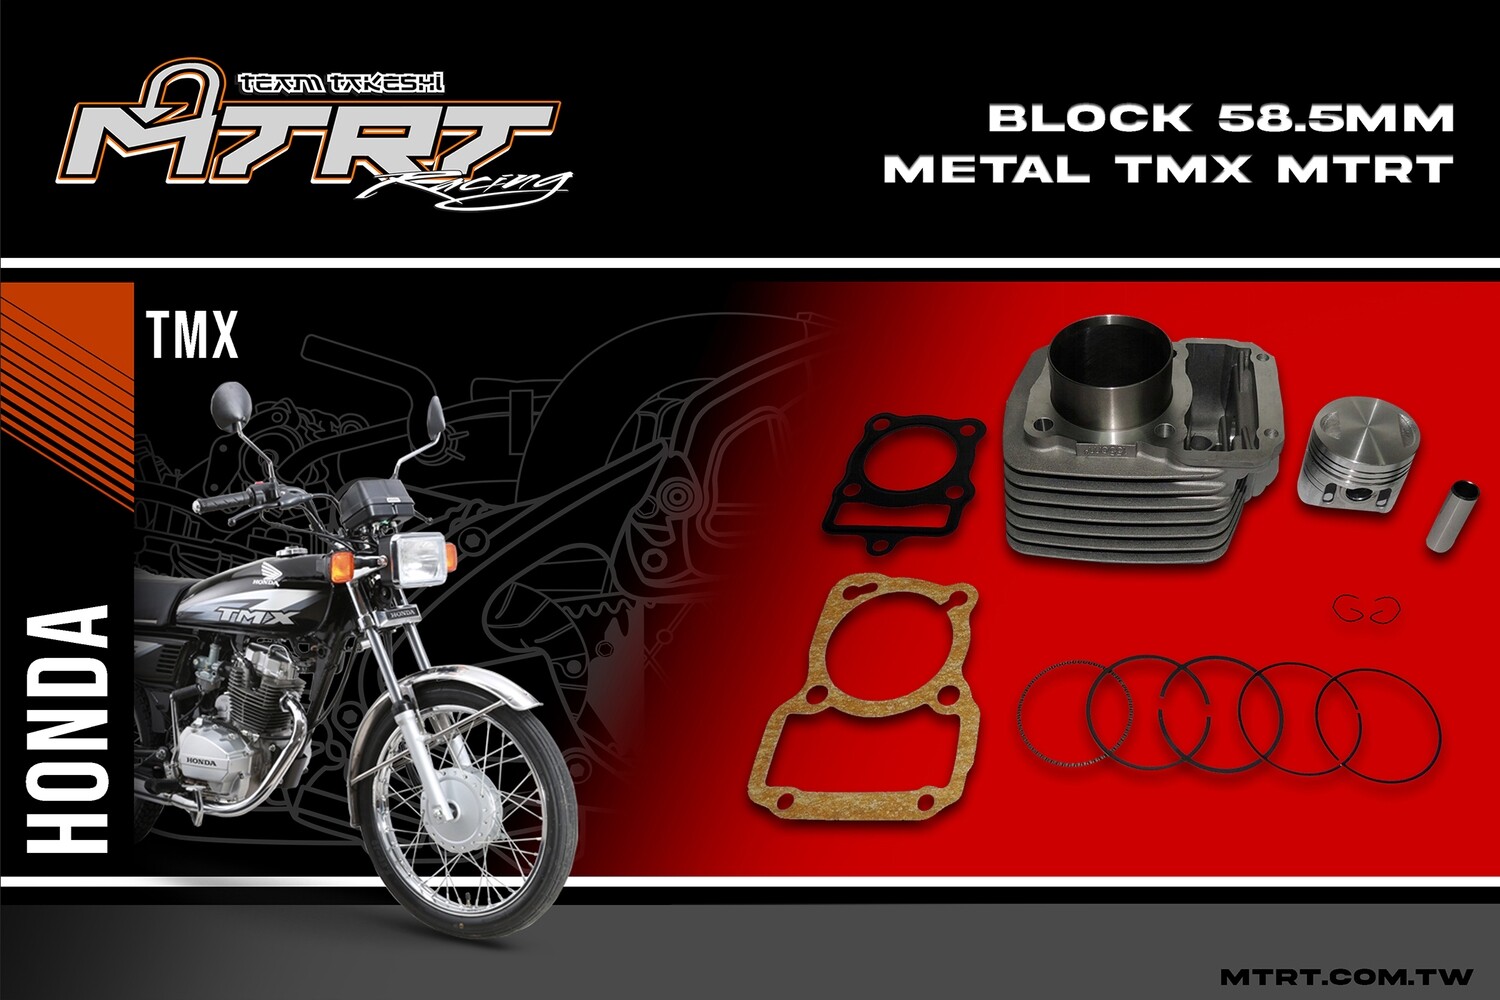 BLOCK  58.5MM  METAL  TMX155  MTRT